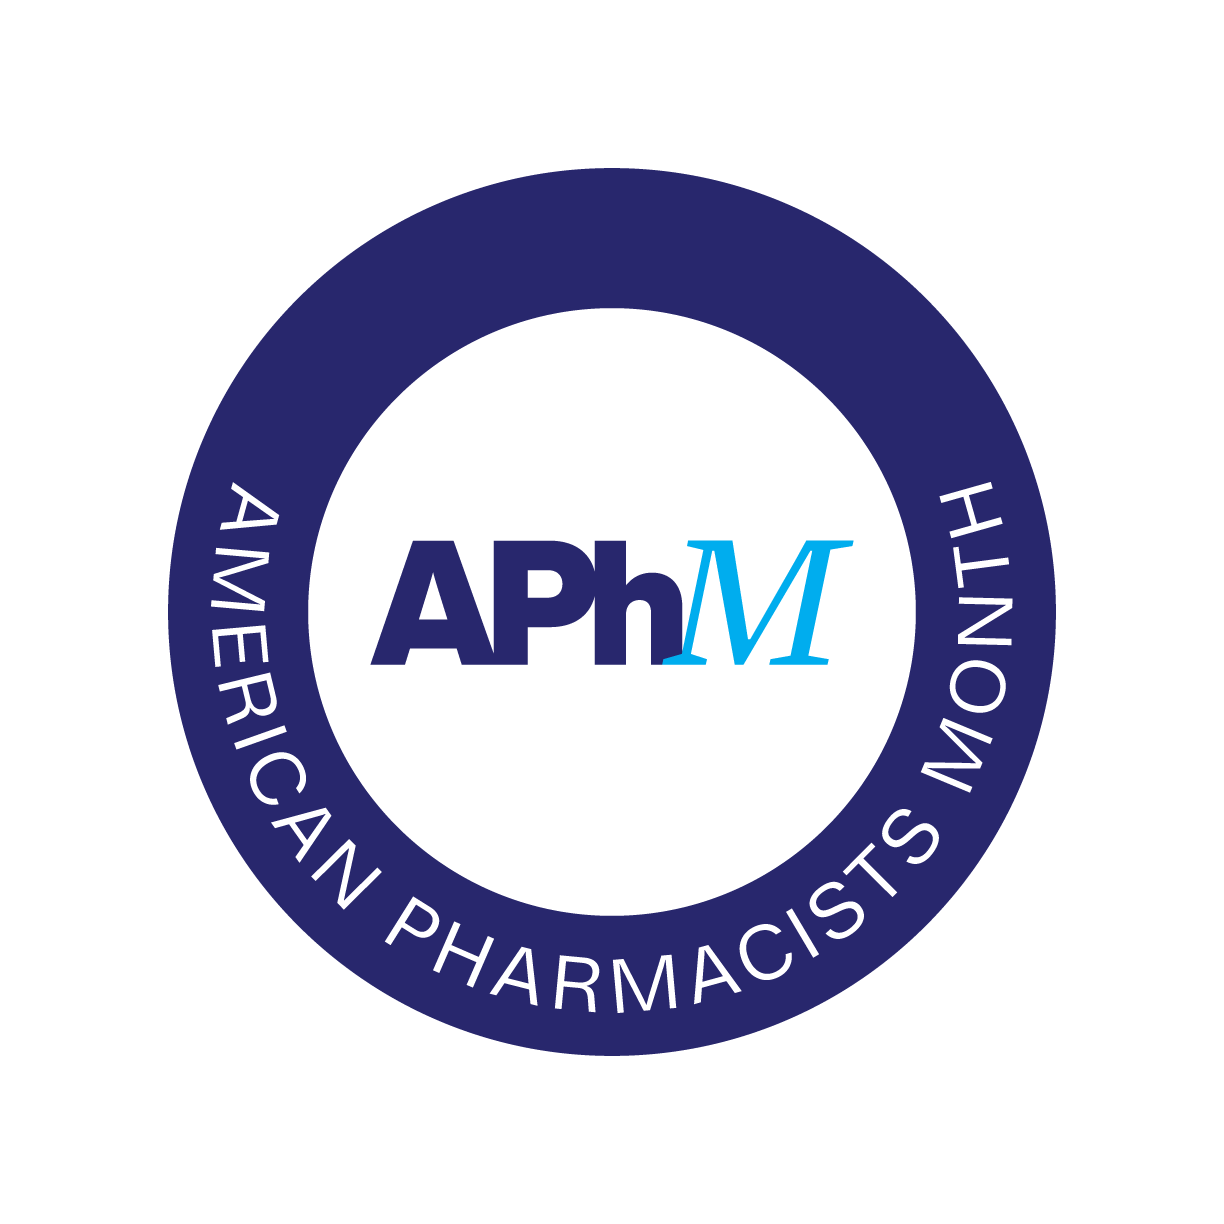 APhM logo #1